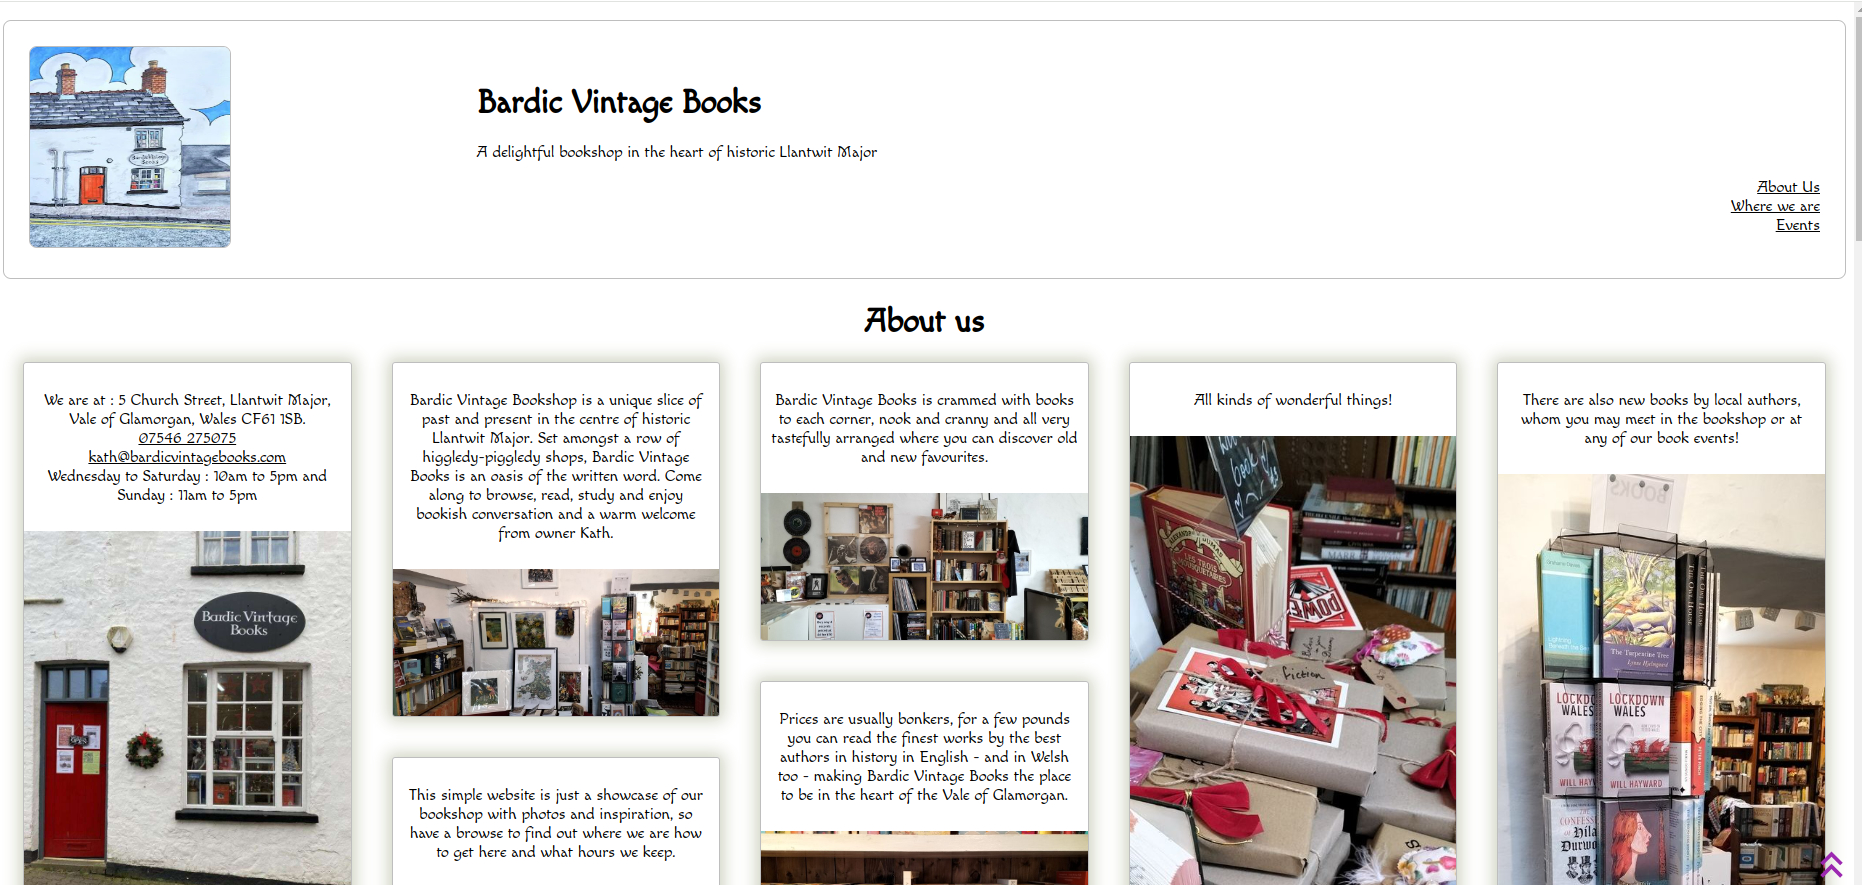 Bardic Vintage Books website